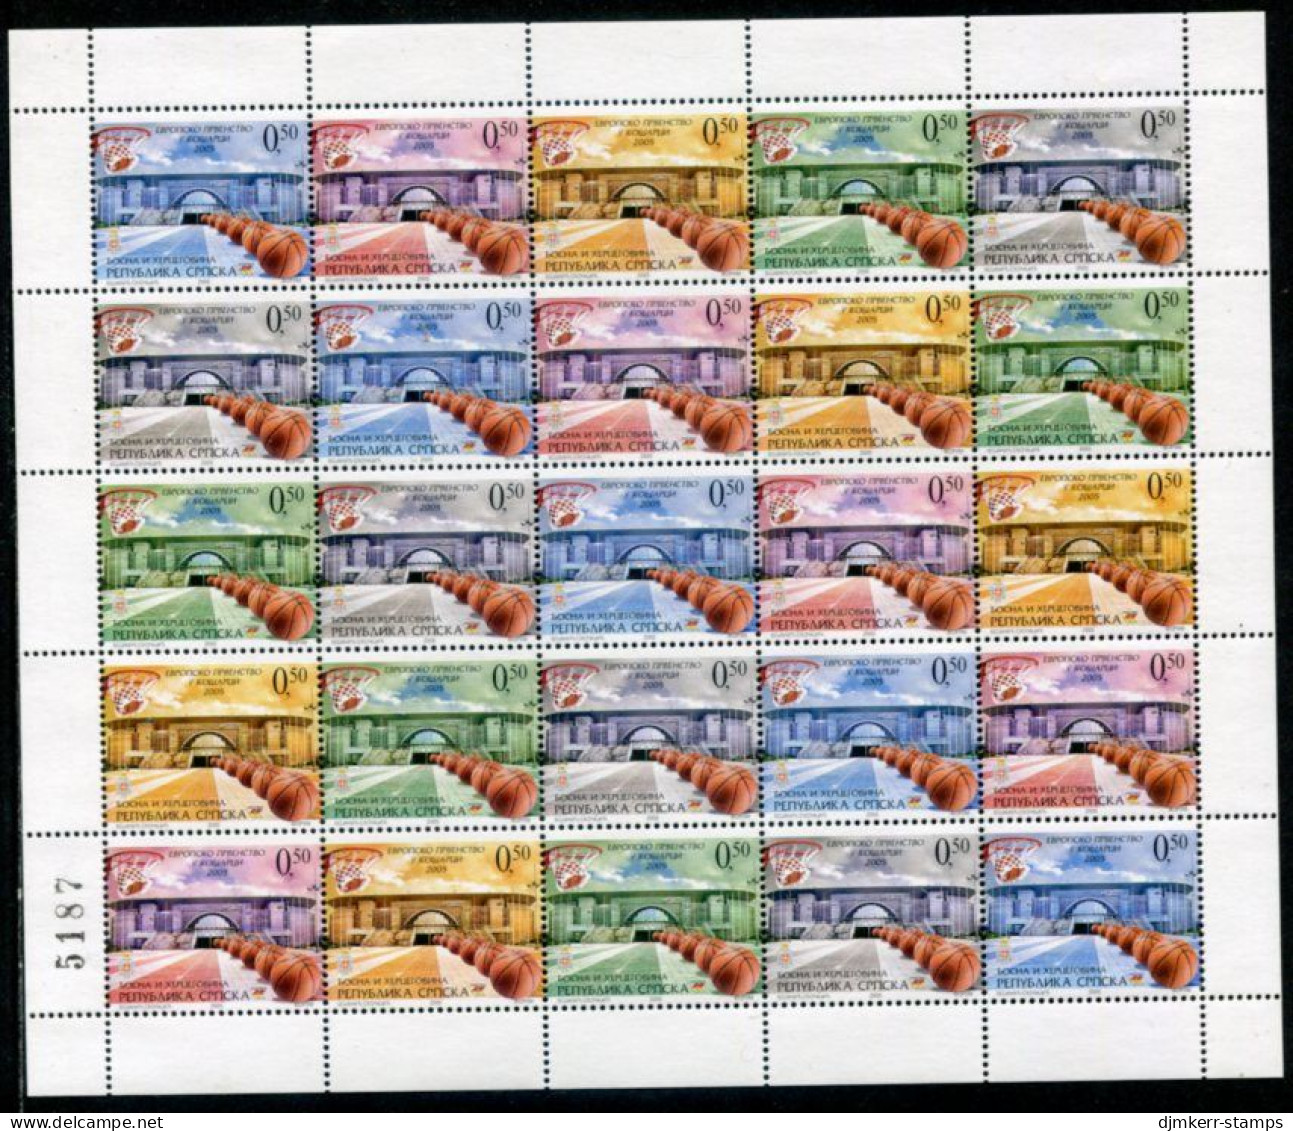 BOSNIAN SERB REPUBLIC 2005 Basketball Sheet With Artist's Initials NS On Stamp 18 MNH / **.  Michel 343-47 - Bosnia Erzegovina